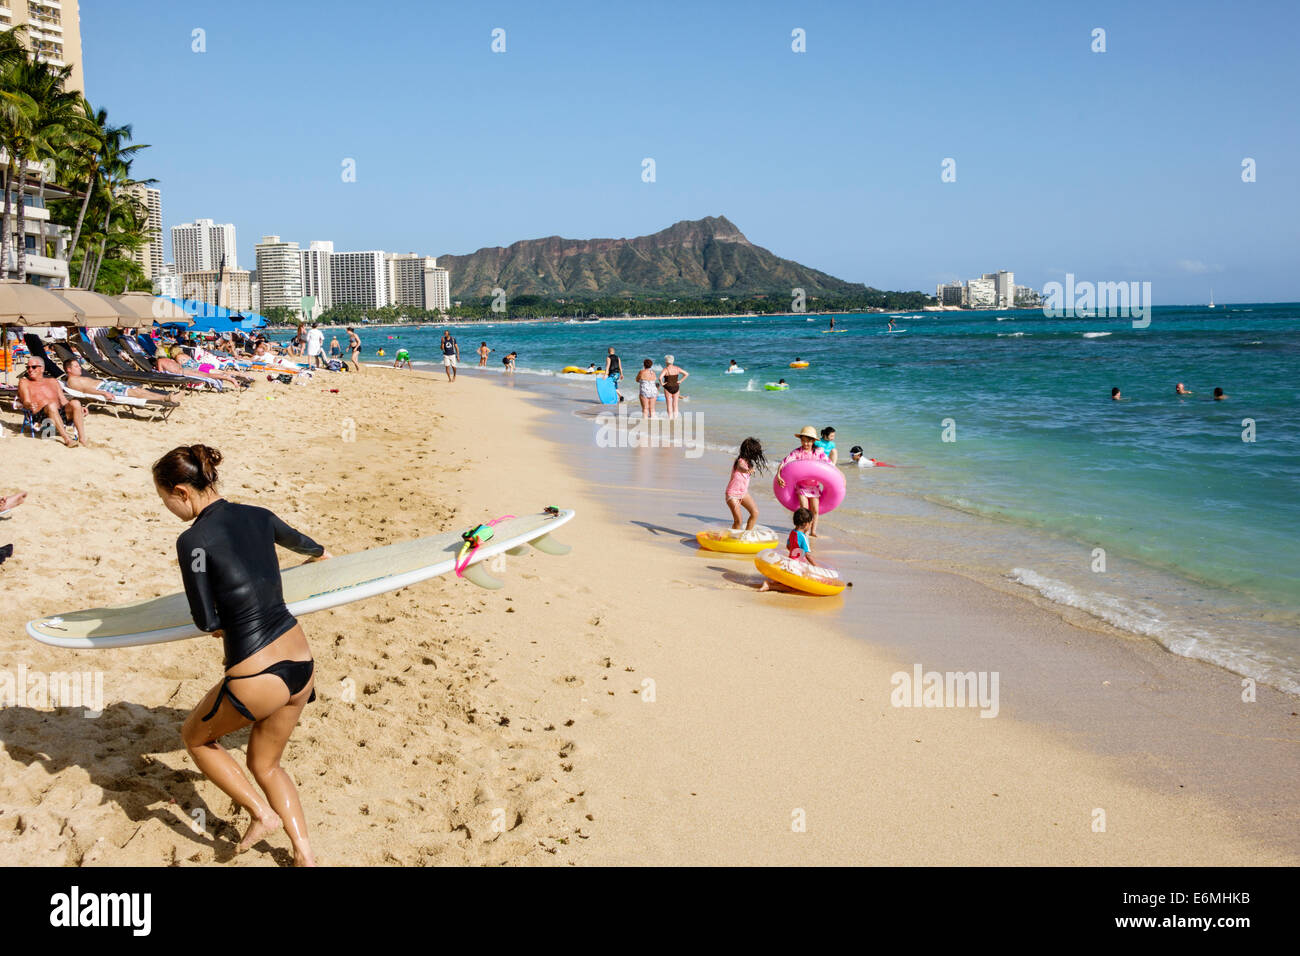 Honolulu Waikiki Beach Hawaii, Hawaiian, Oahu, l'eau de l'océan Pacifique, l'eau de la baie de Waikiki, Diamond Head Crater, volcan éteint, montagne, bains de soleil, front de mer, h Banque D'Images